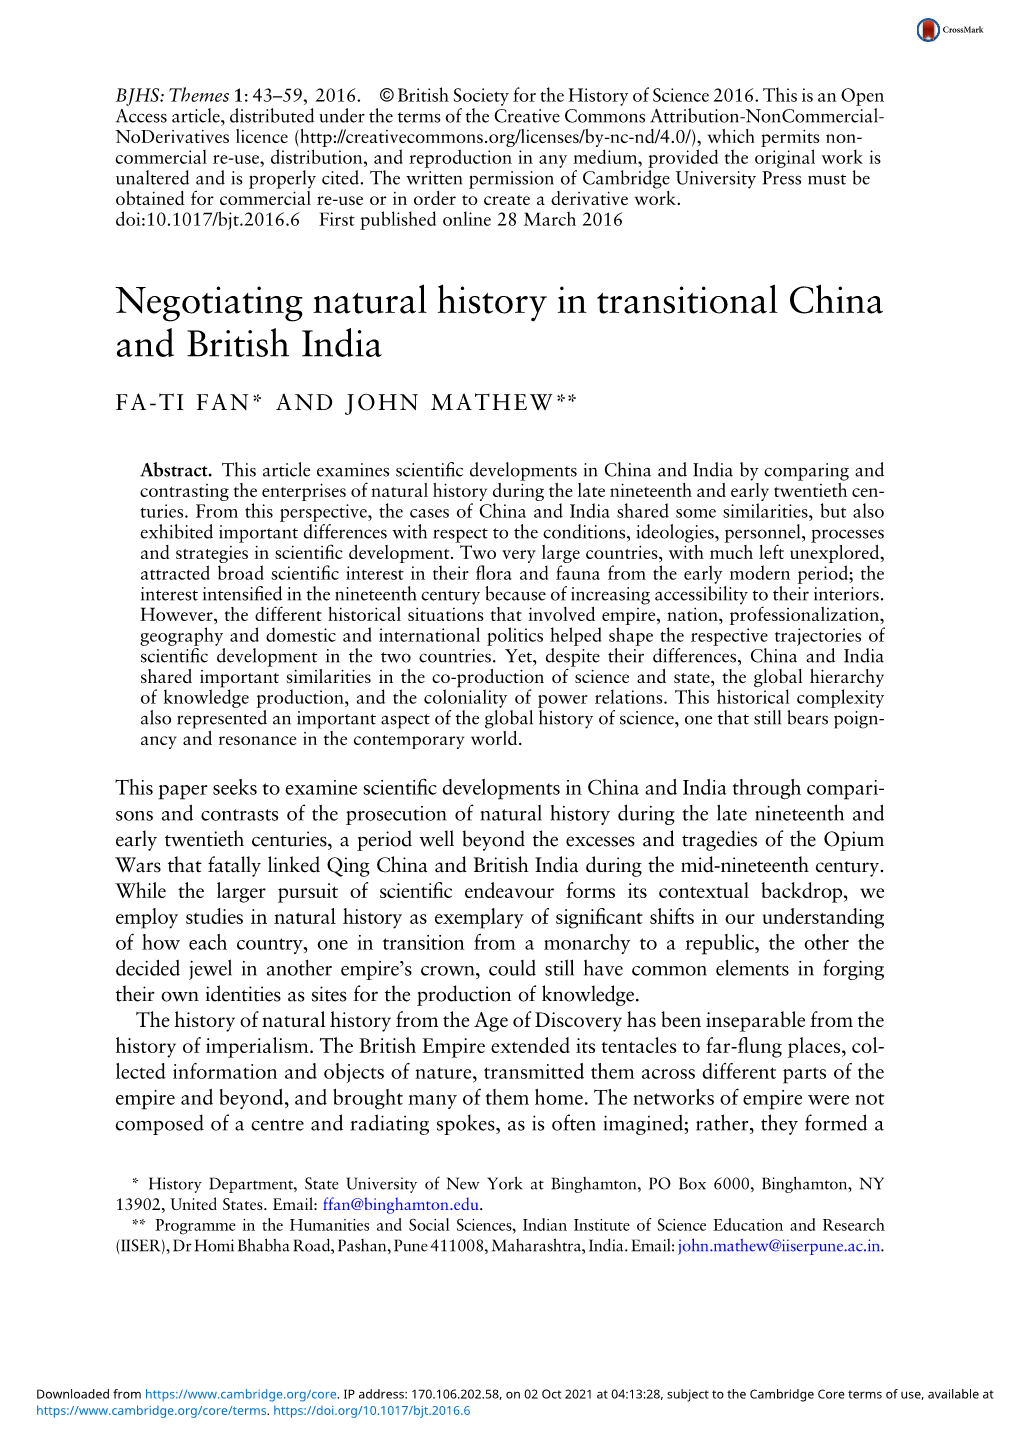 Negotiating Natural History in Transitional China and British India